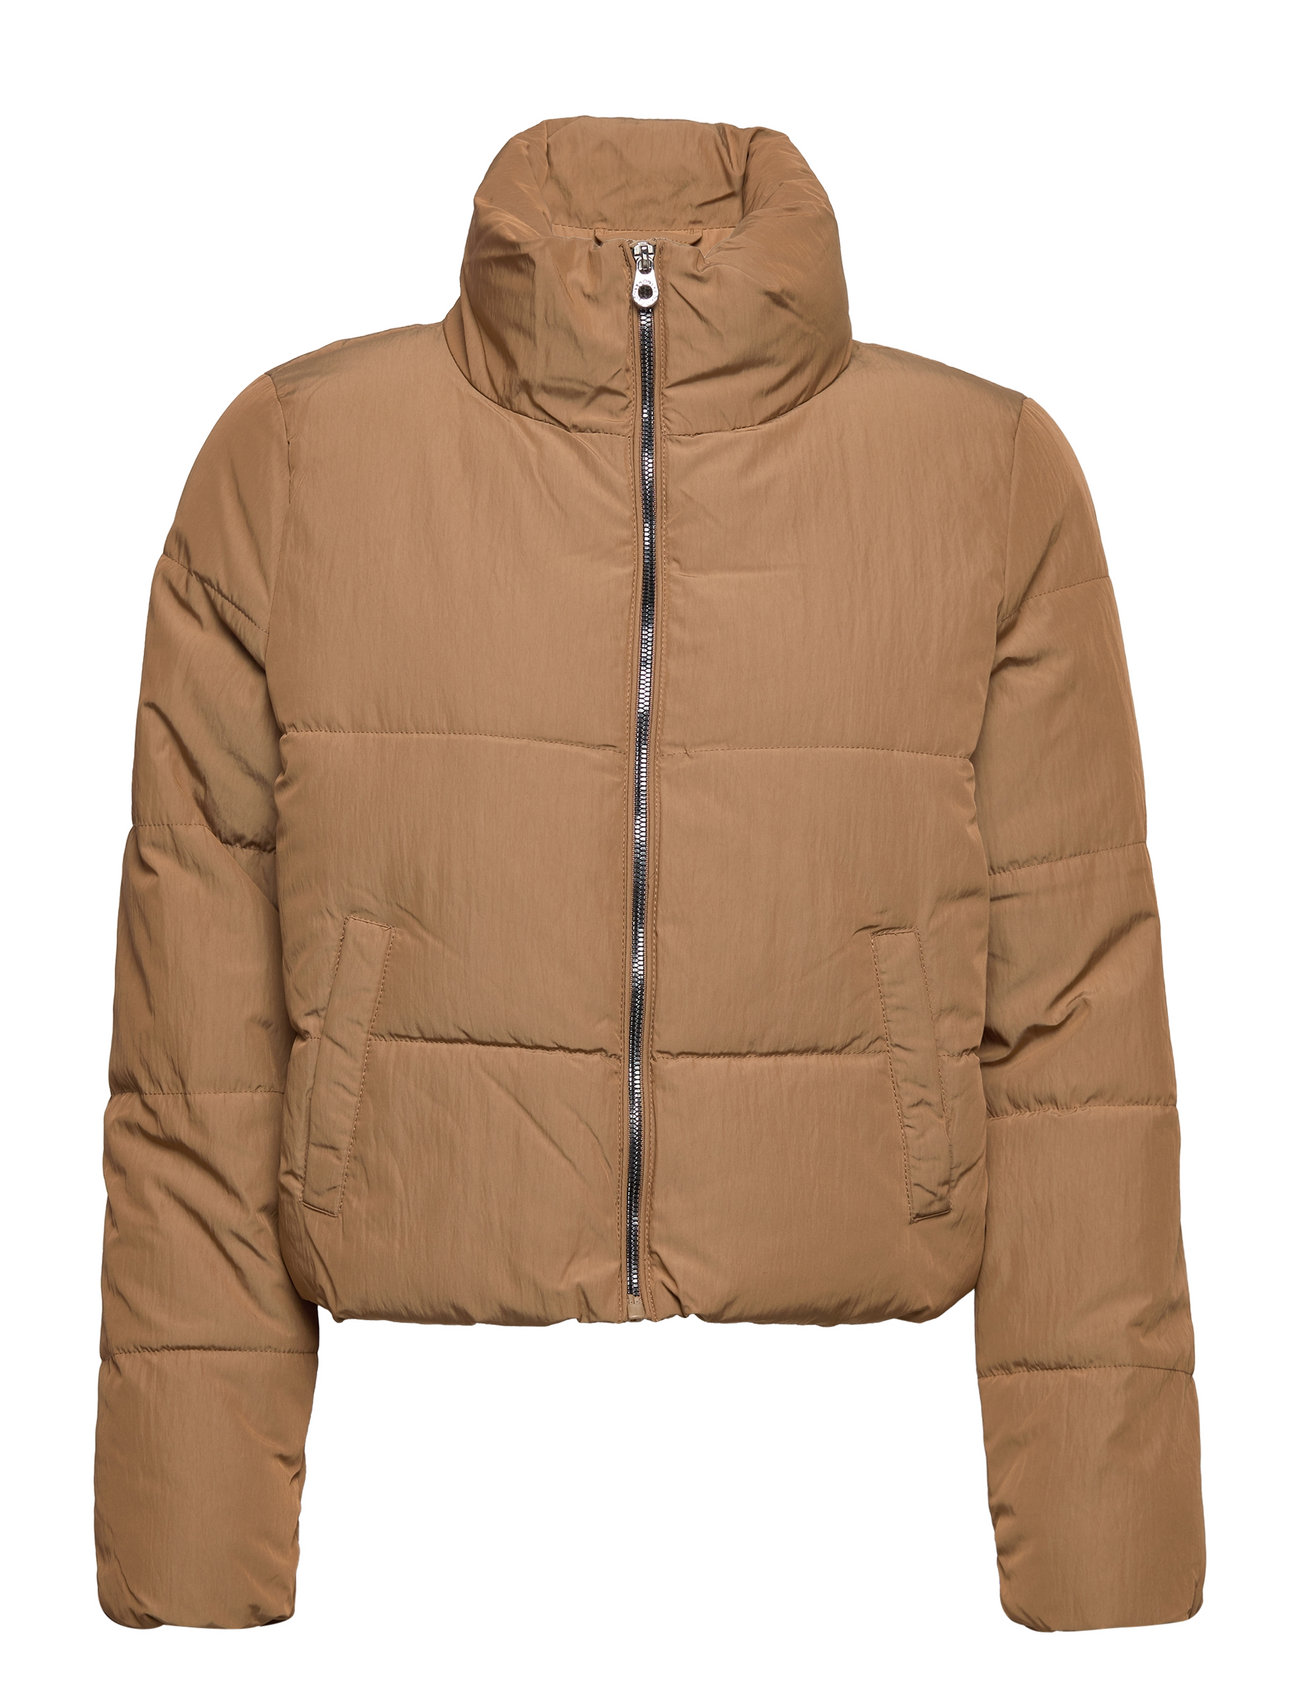 ONLY Onldolly Short Puffer Otw - 170 kr. Køb Forede jakker fra ONLY online på Boozt.com. Hurtig levering & nem retur